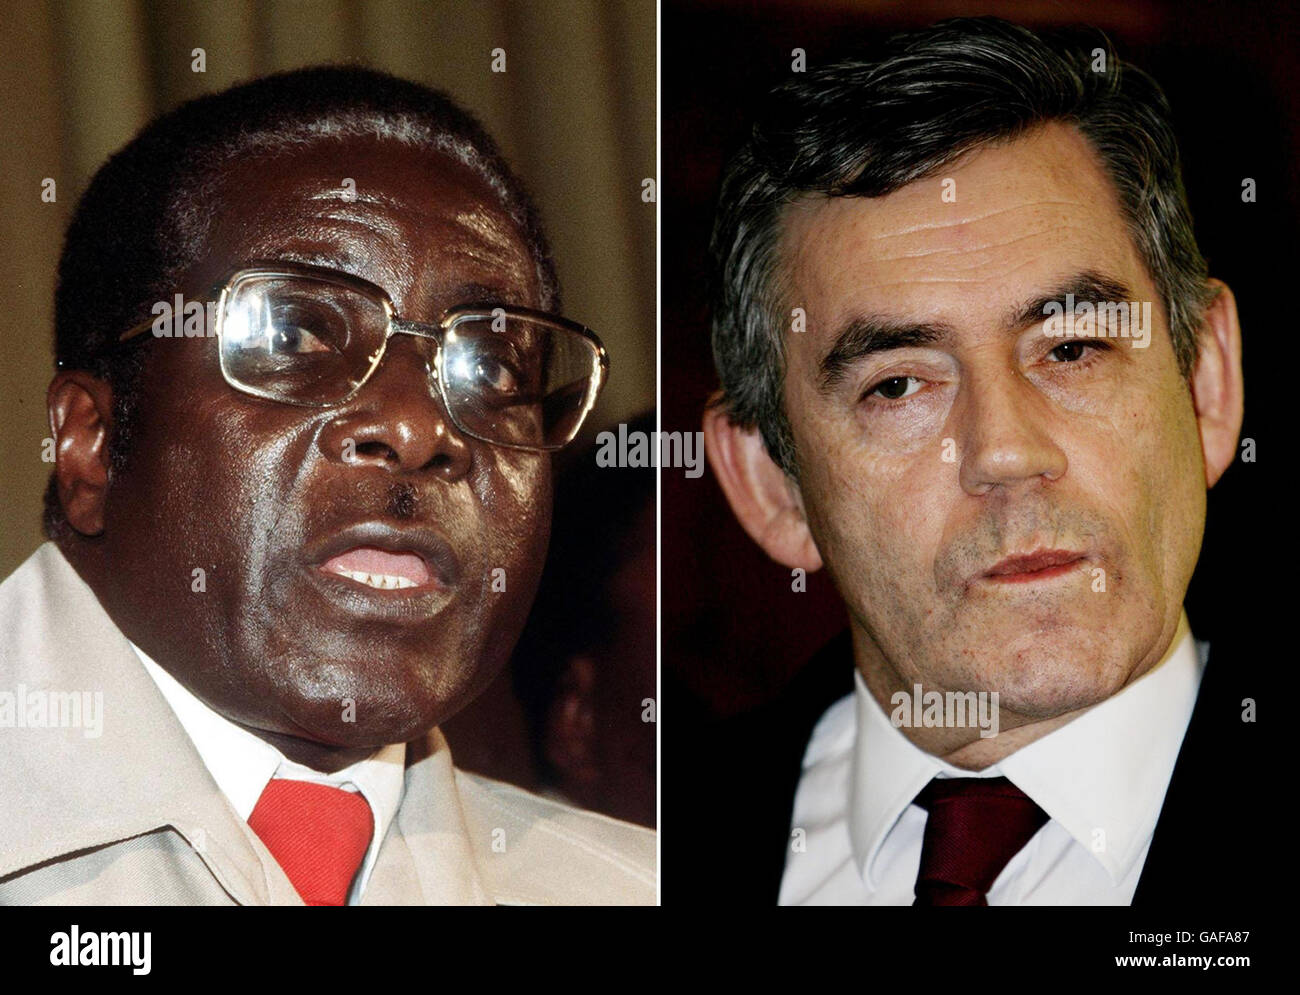 Fotos von (von links nach rechts) Robert Mugabe und Gordon Brown. Die Staats- und Regierungschefs der Europäischen Union und Afrikas werden sich heute in Lissabon versammeln - ohne Gordon Brown. Der Premierminister boykottiert den EU-Afrika-Gipfel in der portugiesischen Hauptstadt, weil Simbabwes Präsident Robert Mugabe anwesend ist. Stockfoto